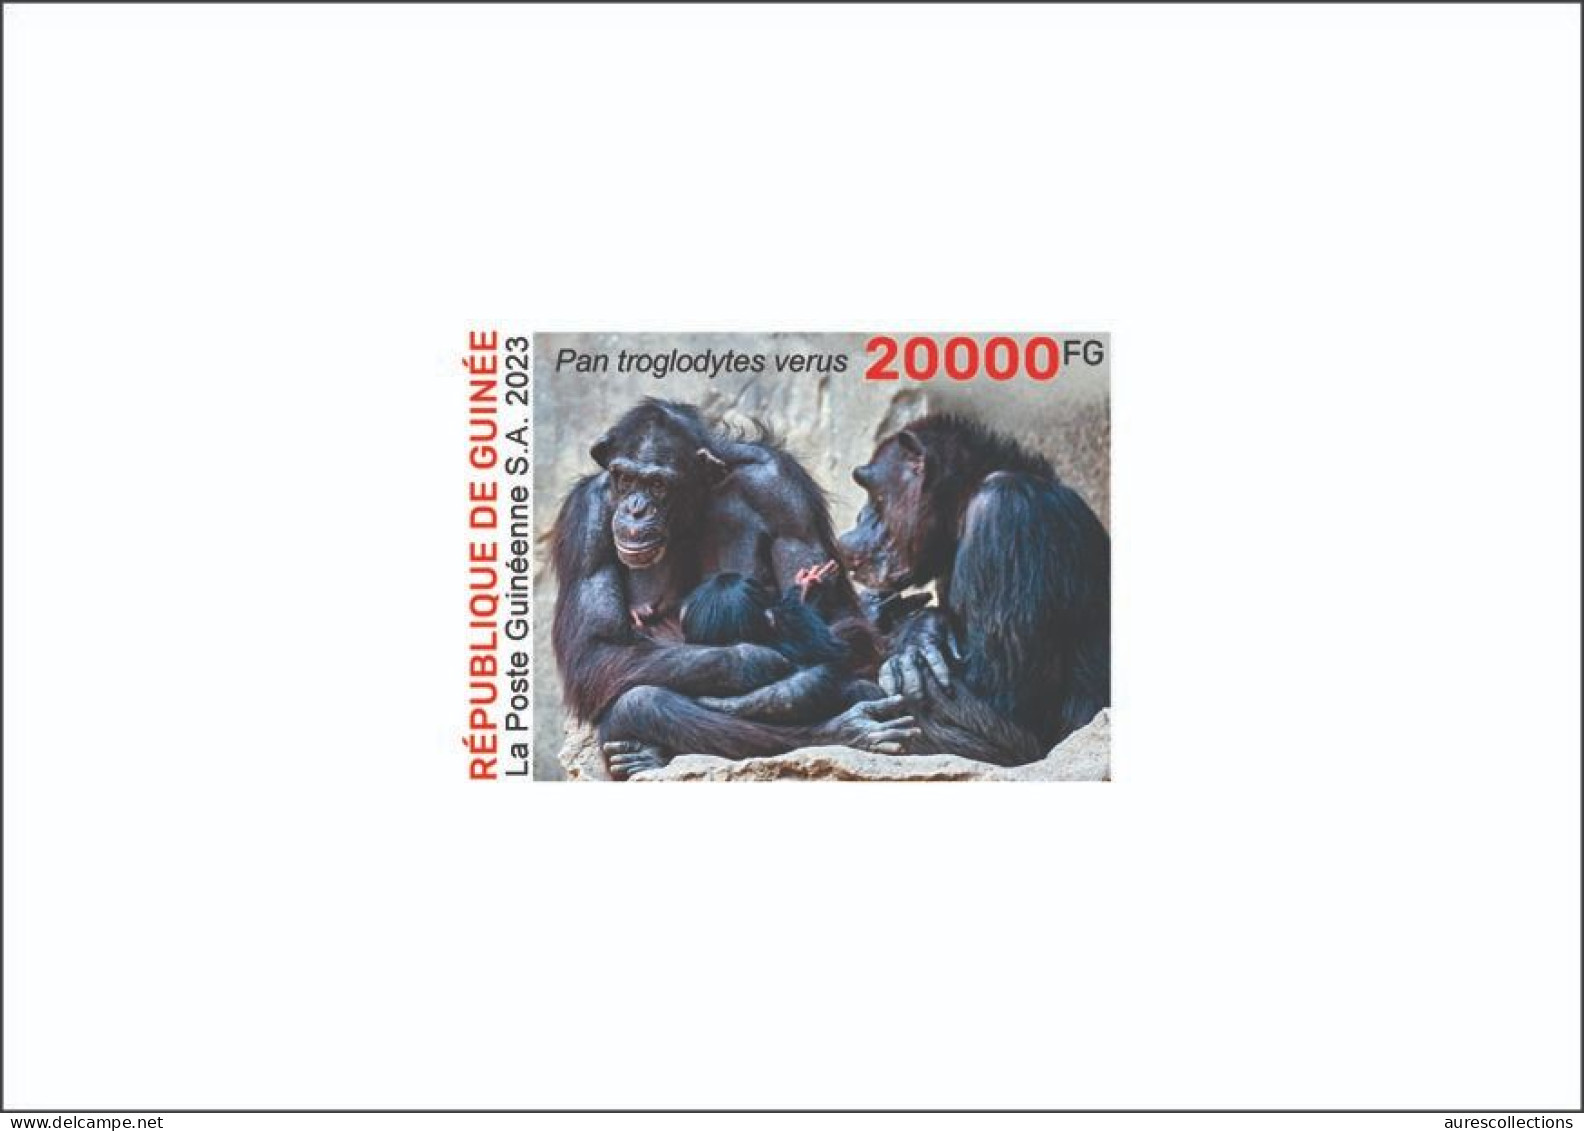 GUINEA 2023 - DELUXE PROOF - BIODIVERSITY - CHIMPANZEE CHIMPANZEES CHIMPANZE APES MONKEYS MONKEY APE SINGES - Schimpansen